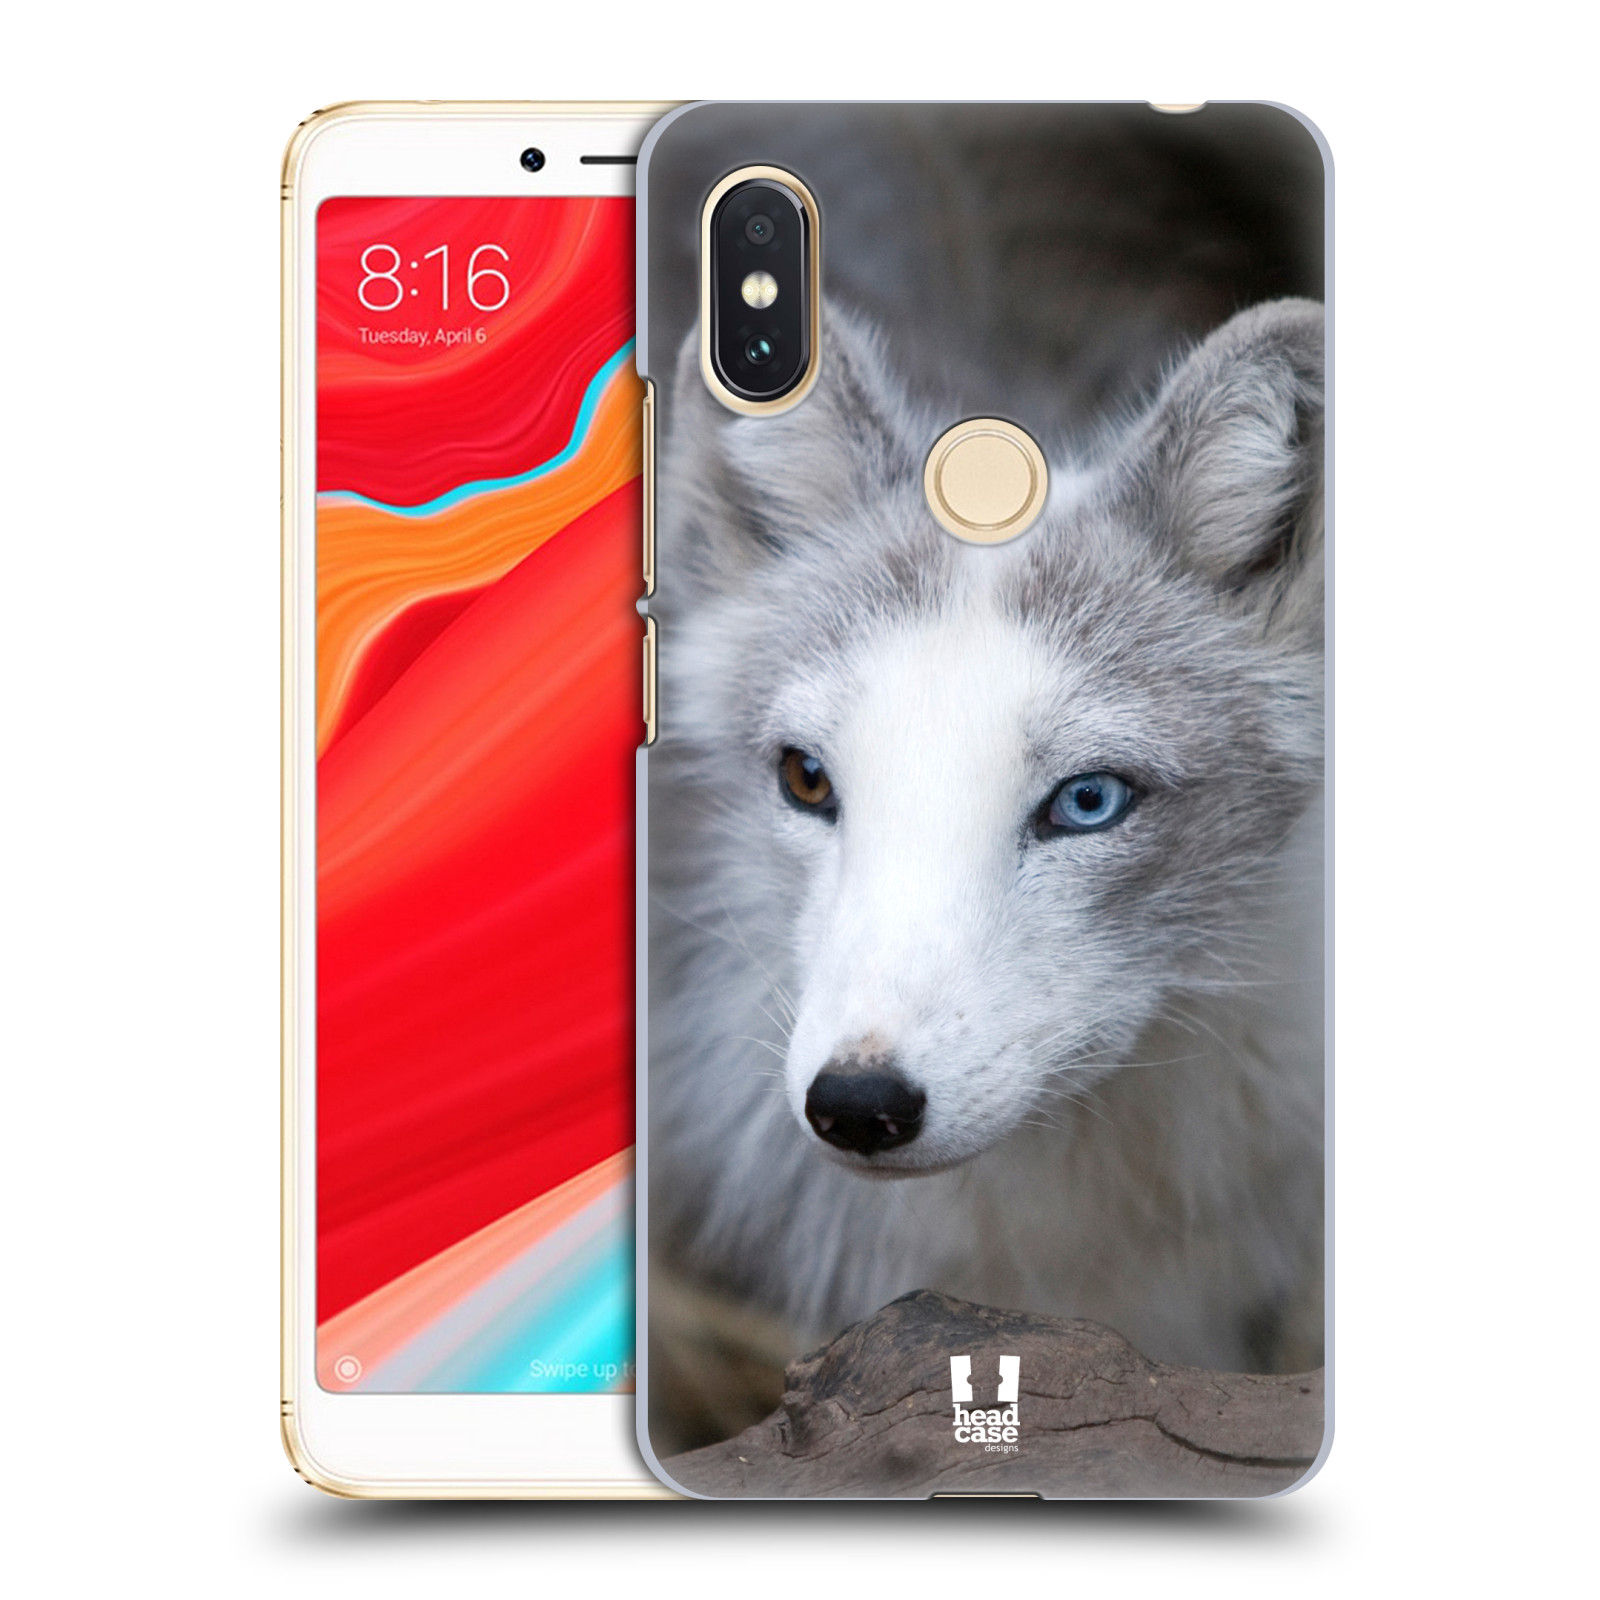 HEAD CASE plastový obal na mobil Xiaomi Redmi S2 vzor slavná zvířata foto  Liška polární